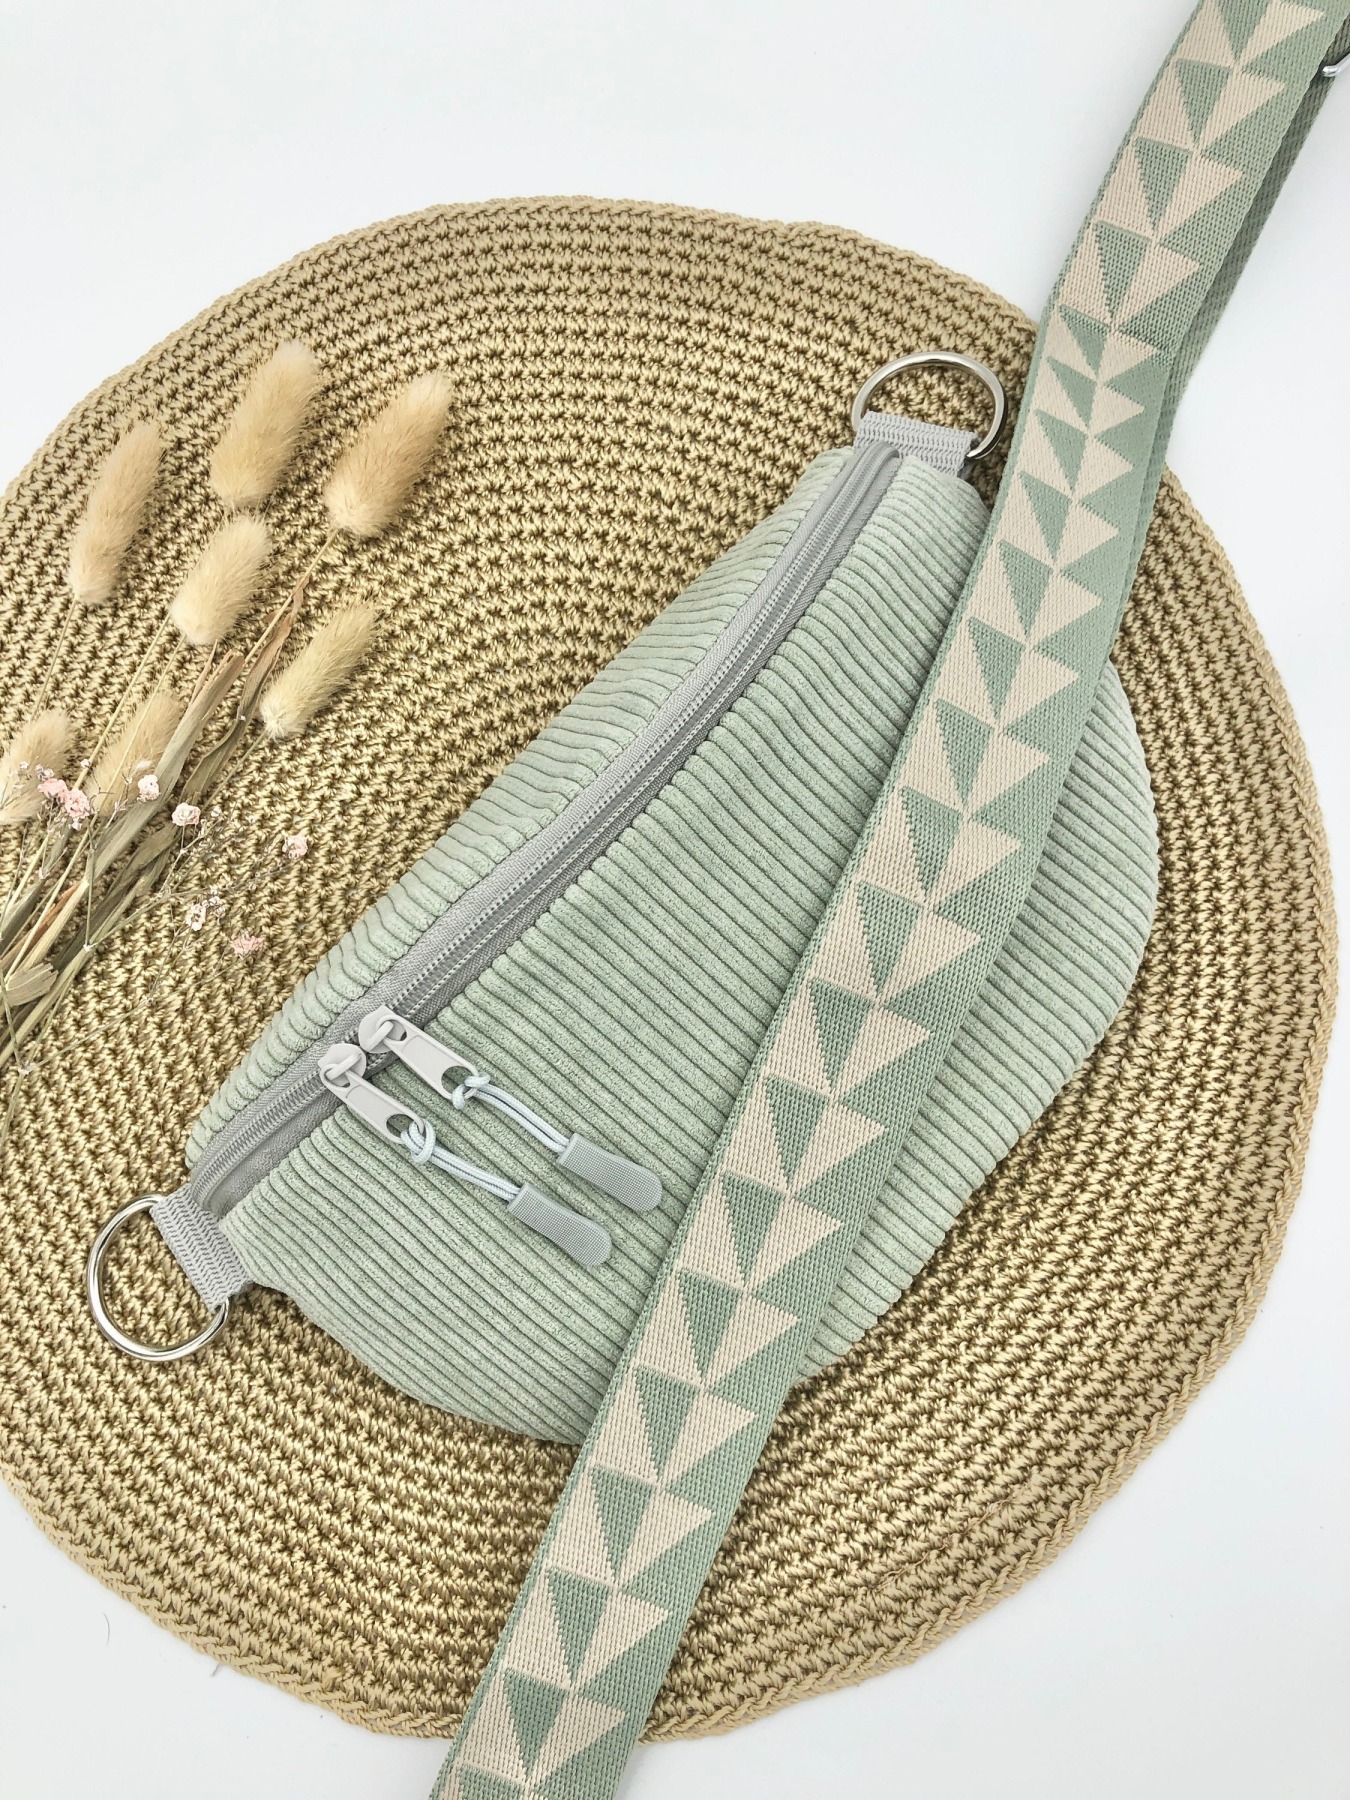 Bauchtasche XL Crossbag Cord salbei mit Taschengurt salbei gemustert zartes grün Hipbag leicht und